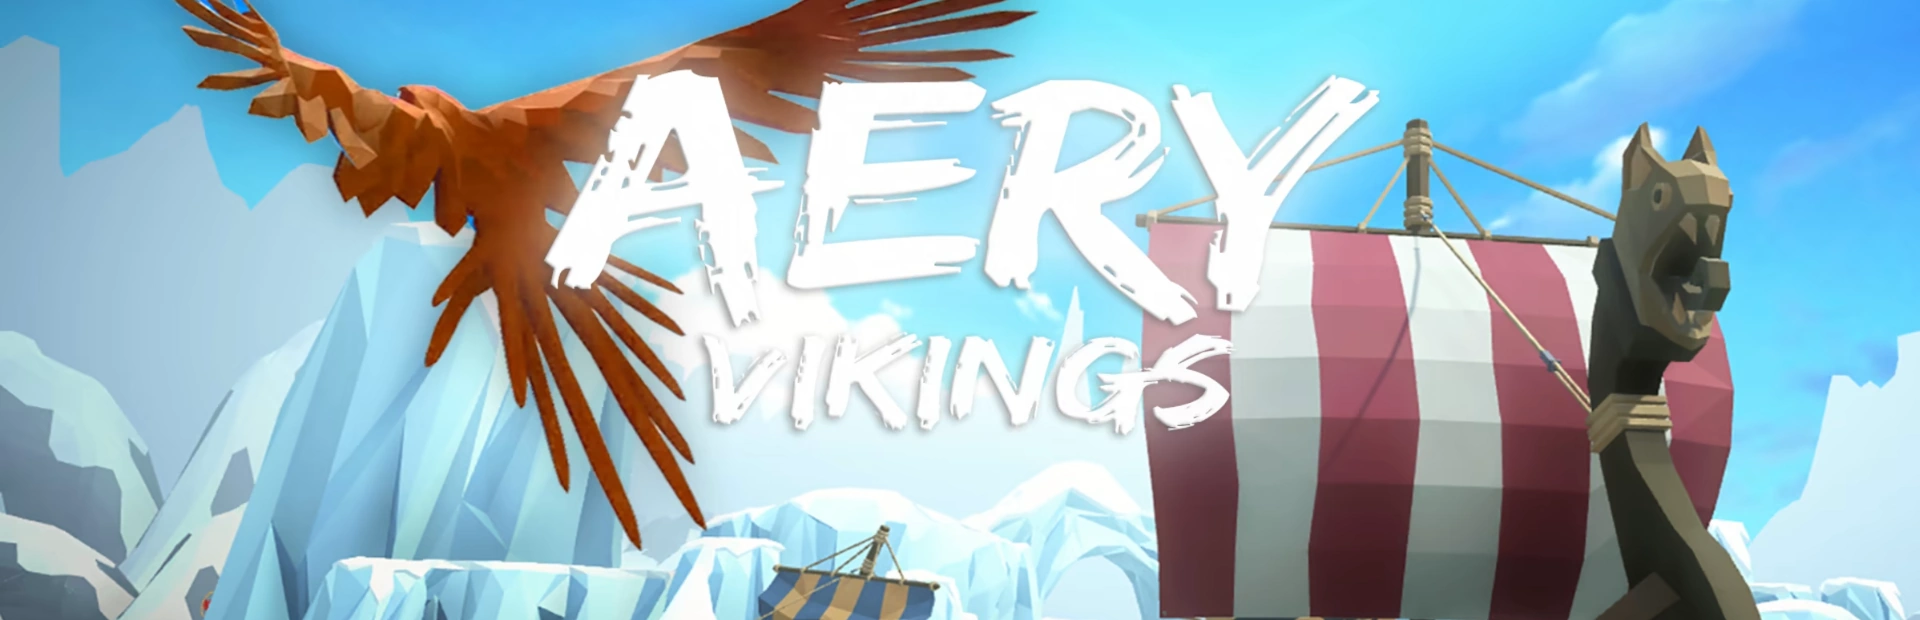 دانلود بازی Aery Vikings برای کامپیوتر - گیمباتو